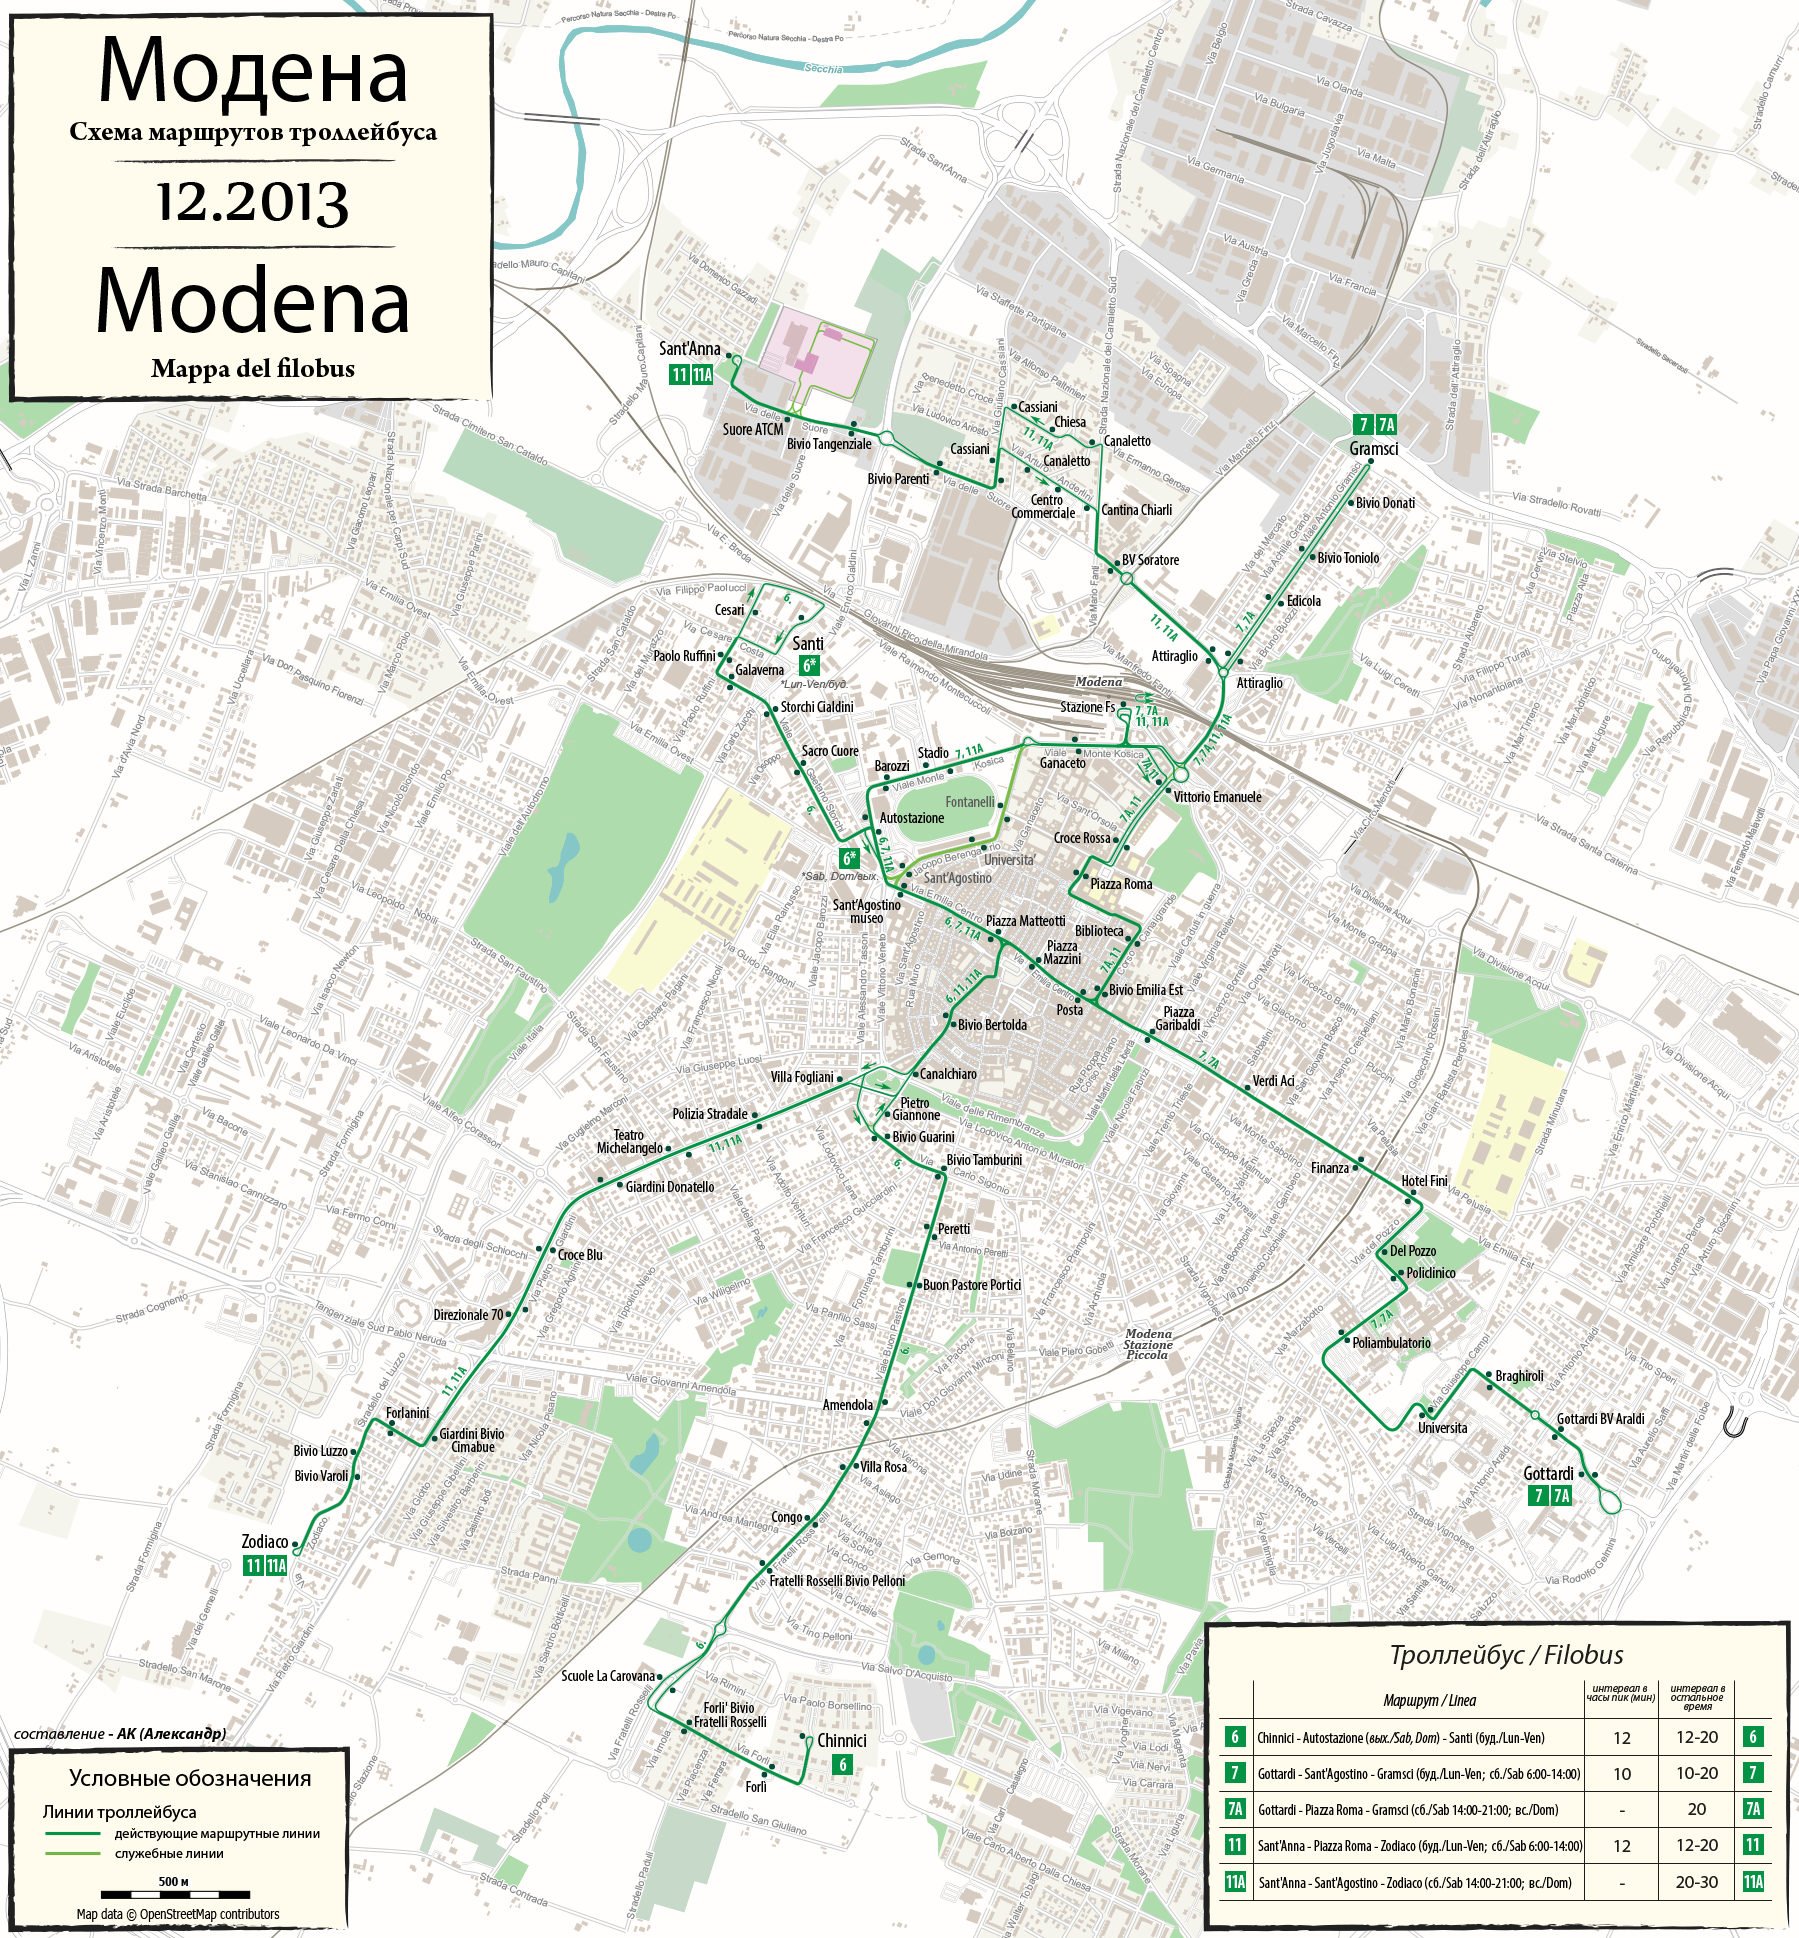 Modena — Maps